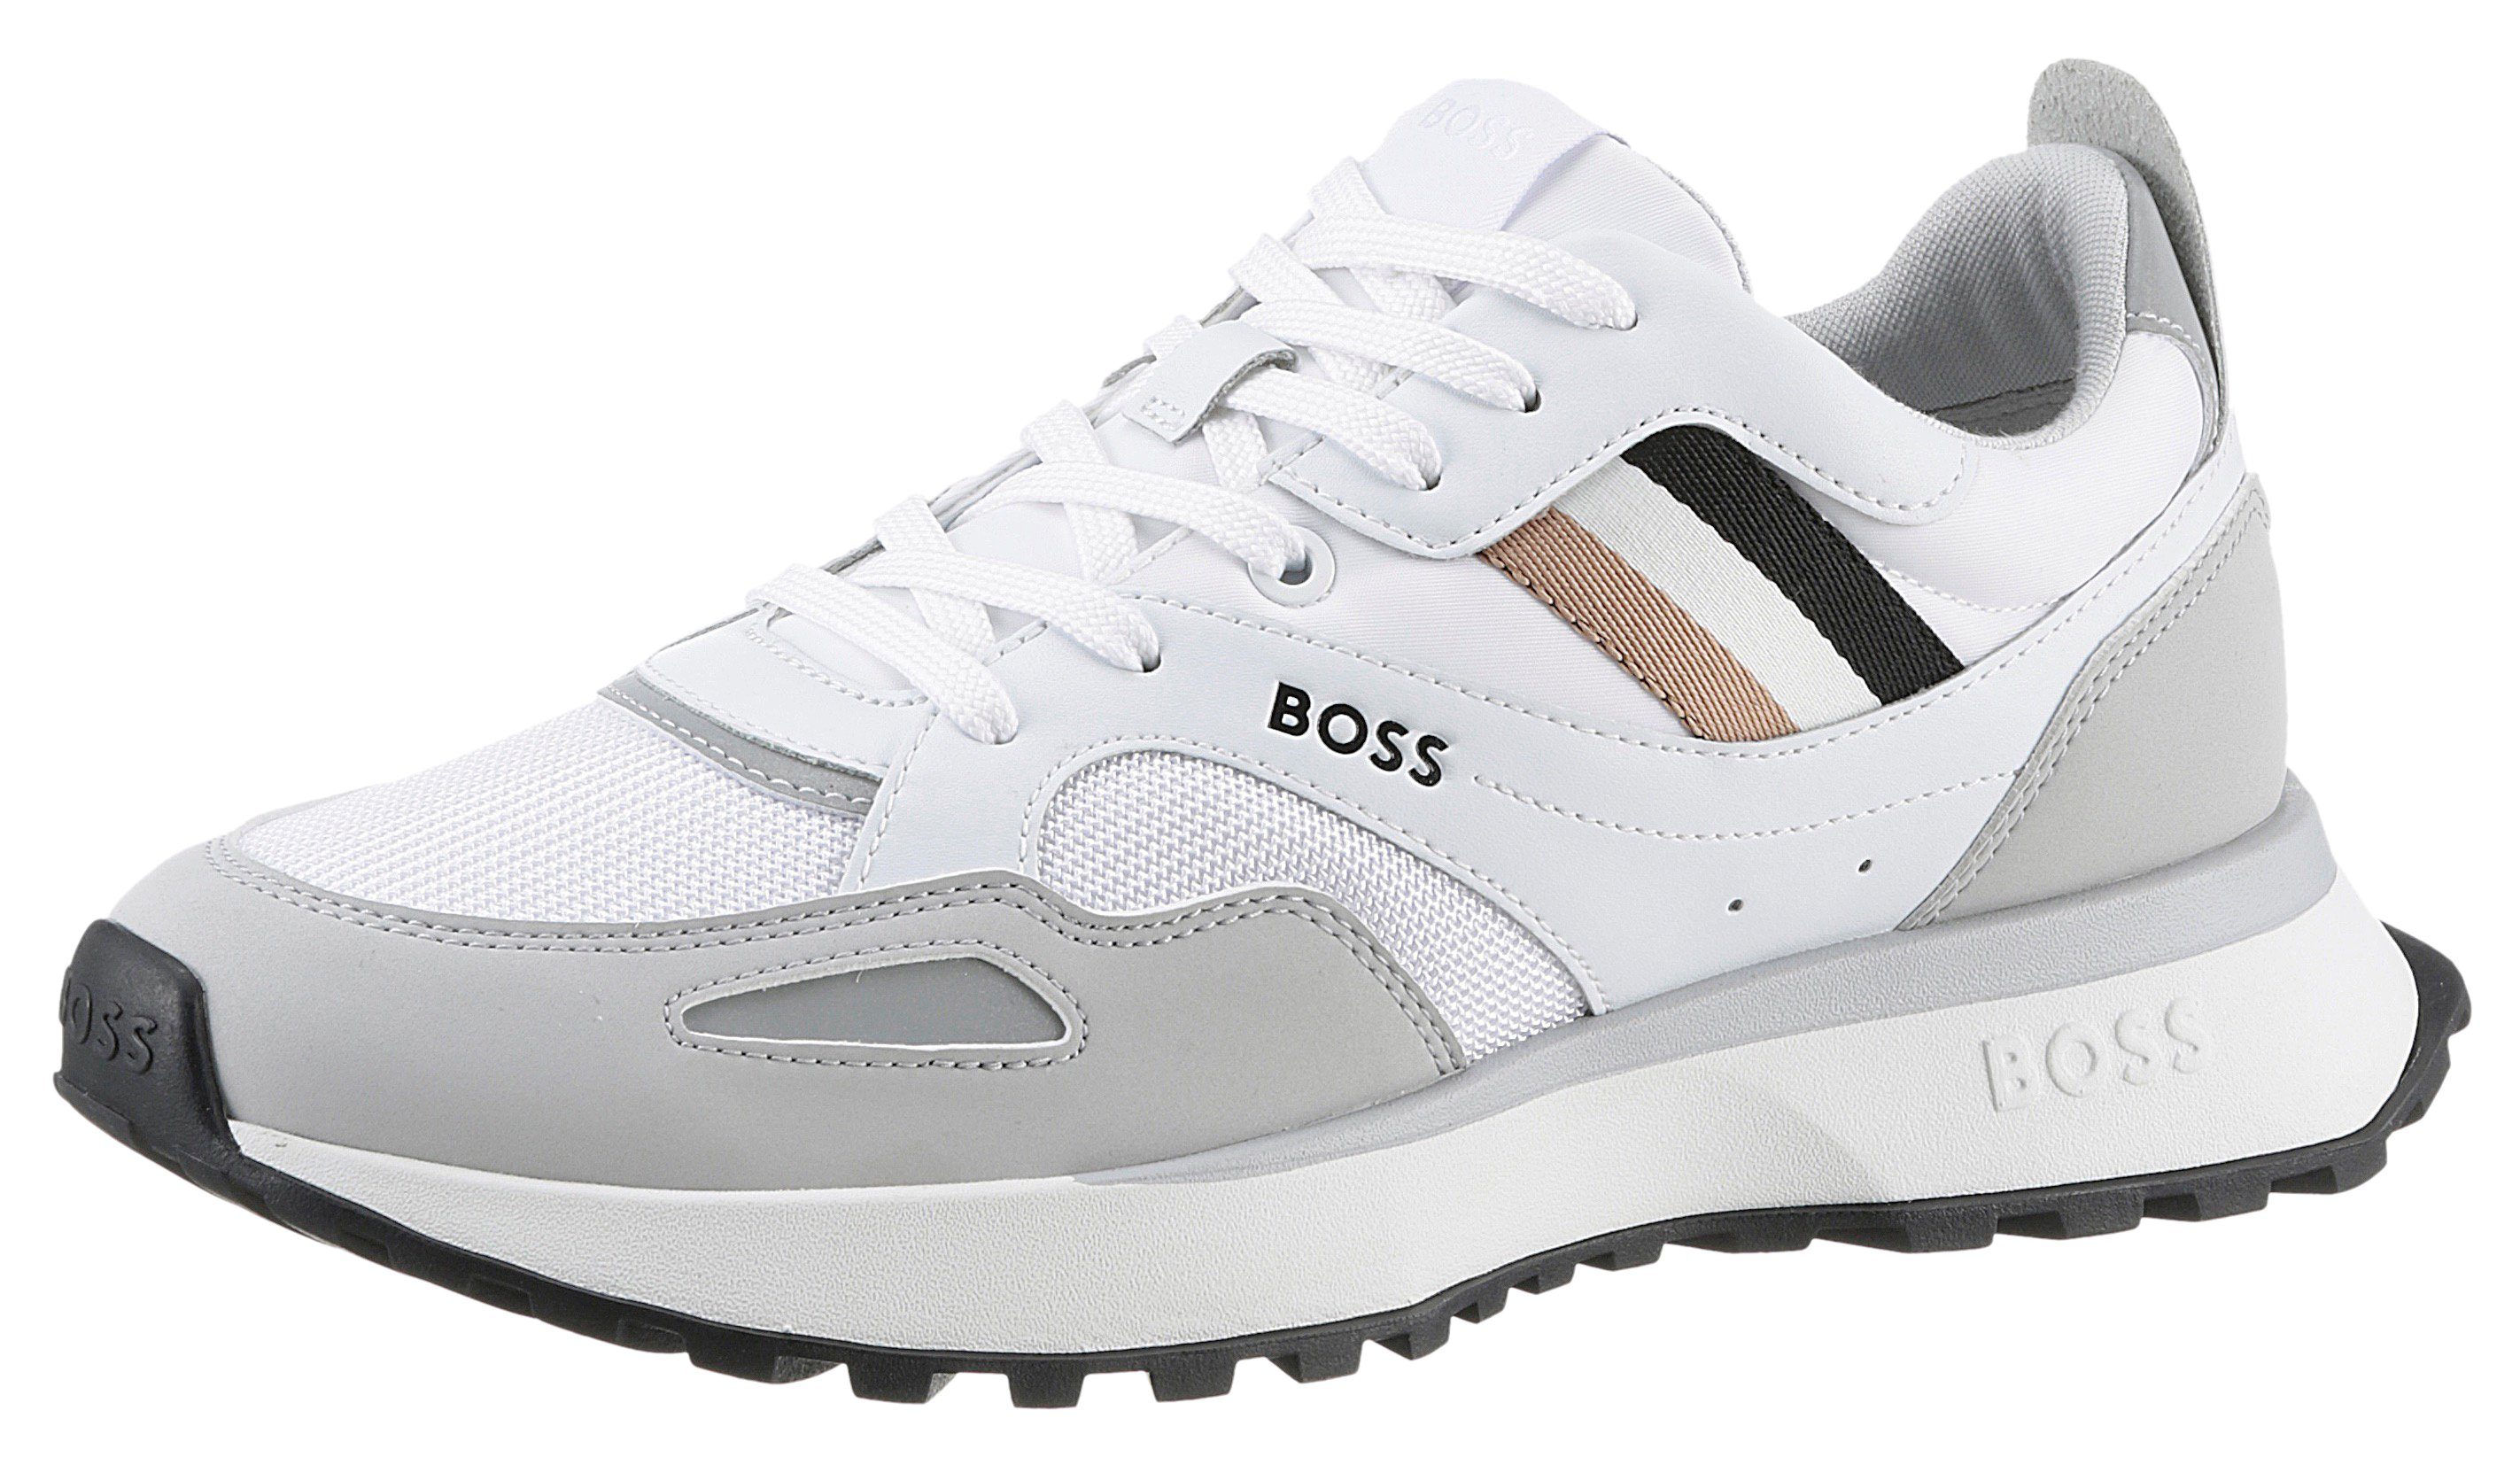 BOSS Jonah_Runn Sneaker mit BOSS-Markenlabel weiß kombiniert